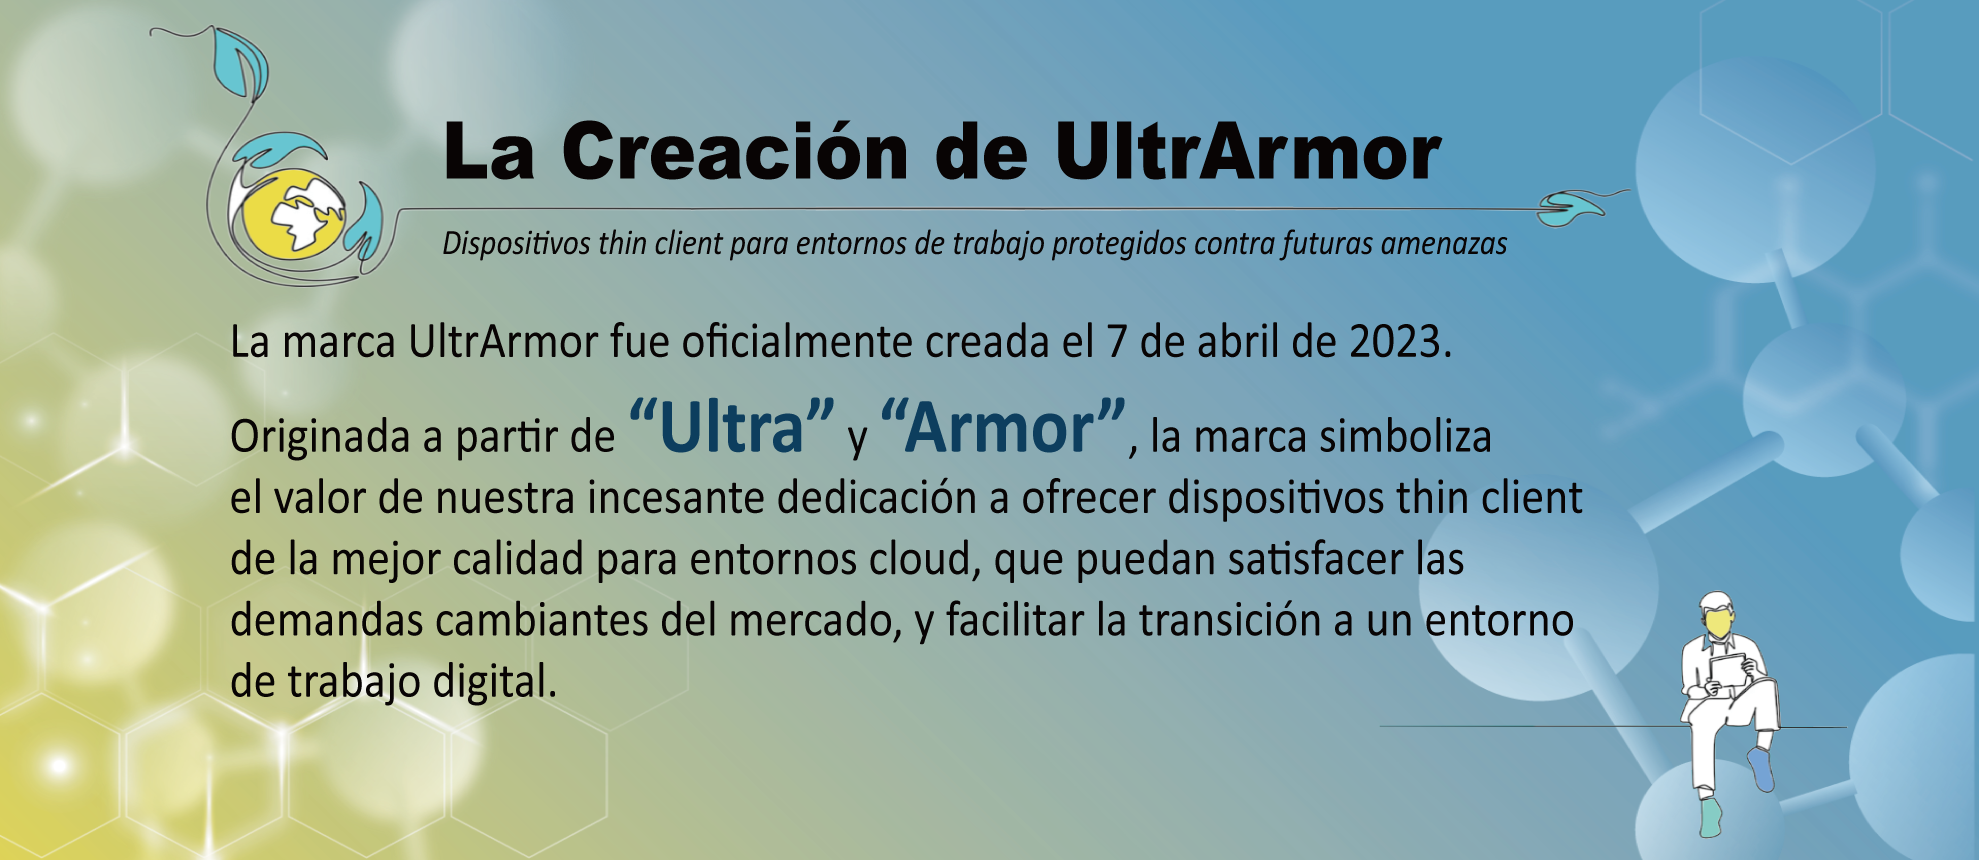 La Creación de UltrArmor